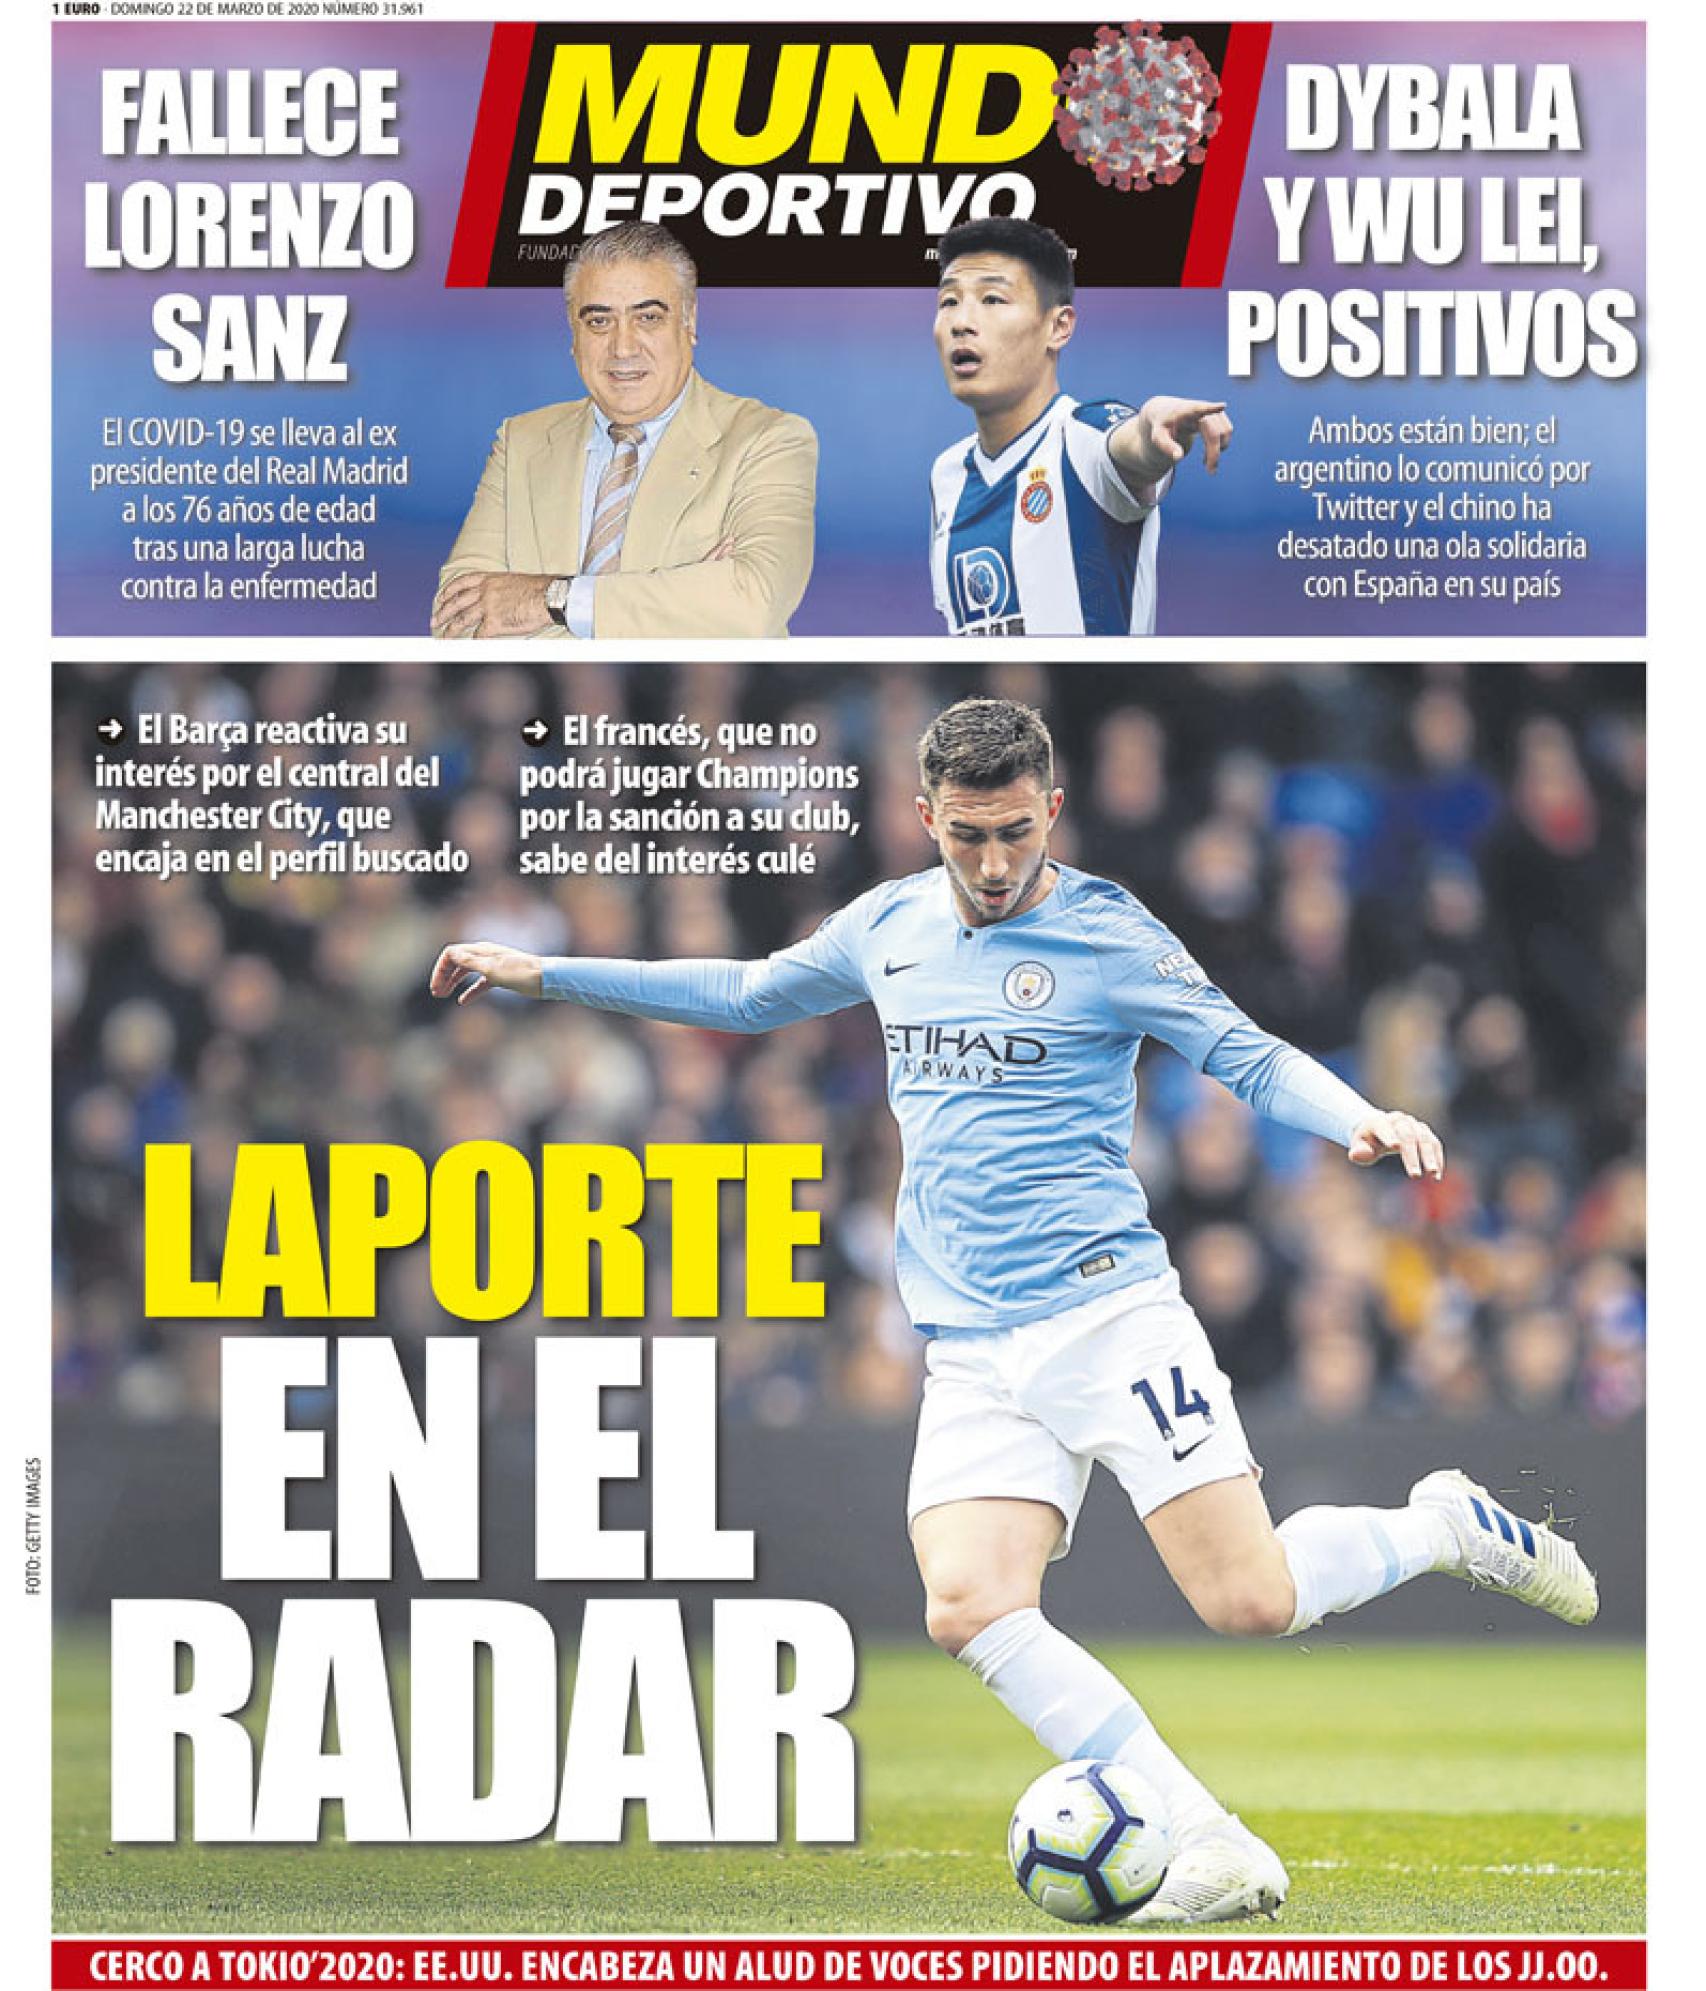 La portada del diario Mundo Deportivo (22/03/2020)